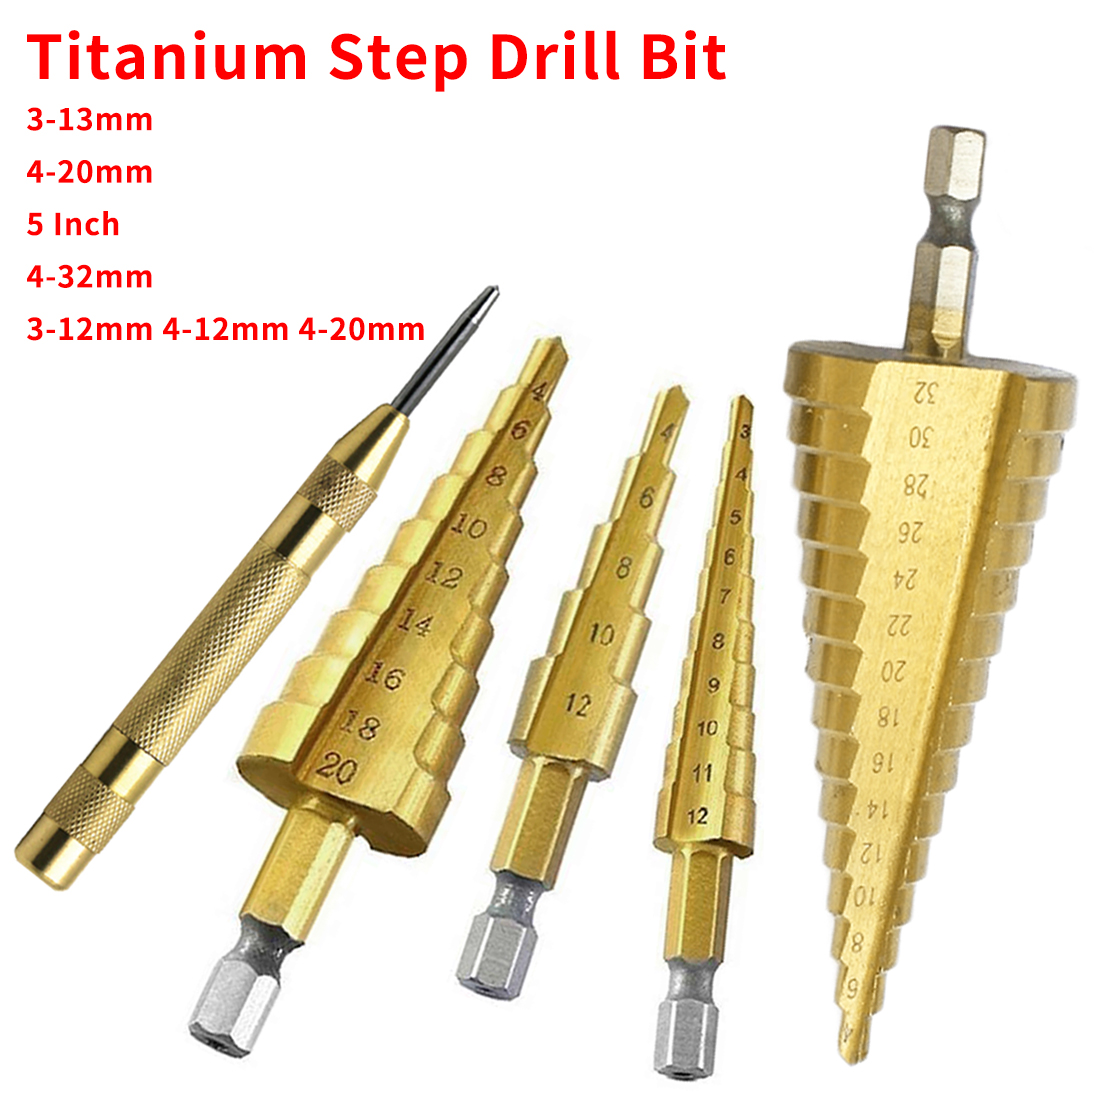 1pcs/lot Titanium Step Drill Bits 3-12mm HSS Power Tools HSS Wood Metal Drilling